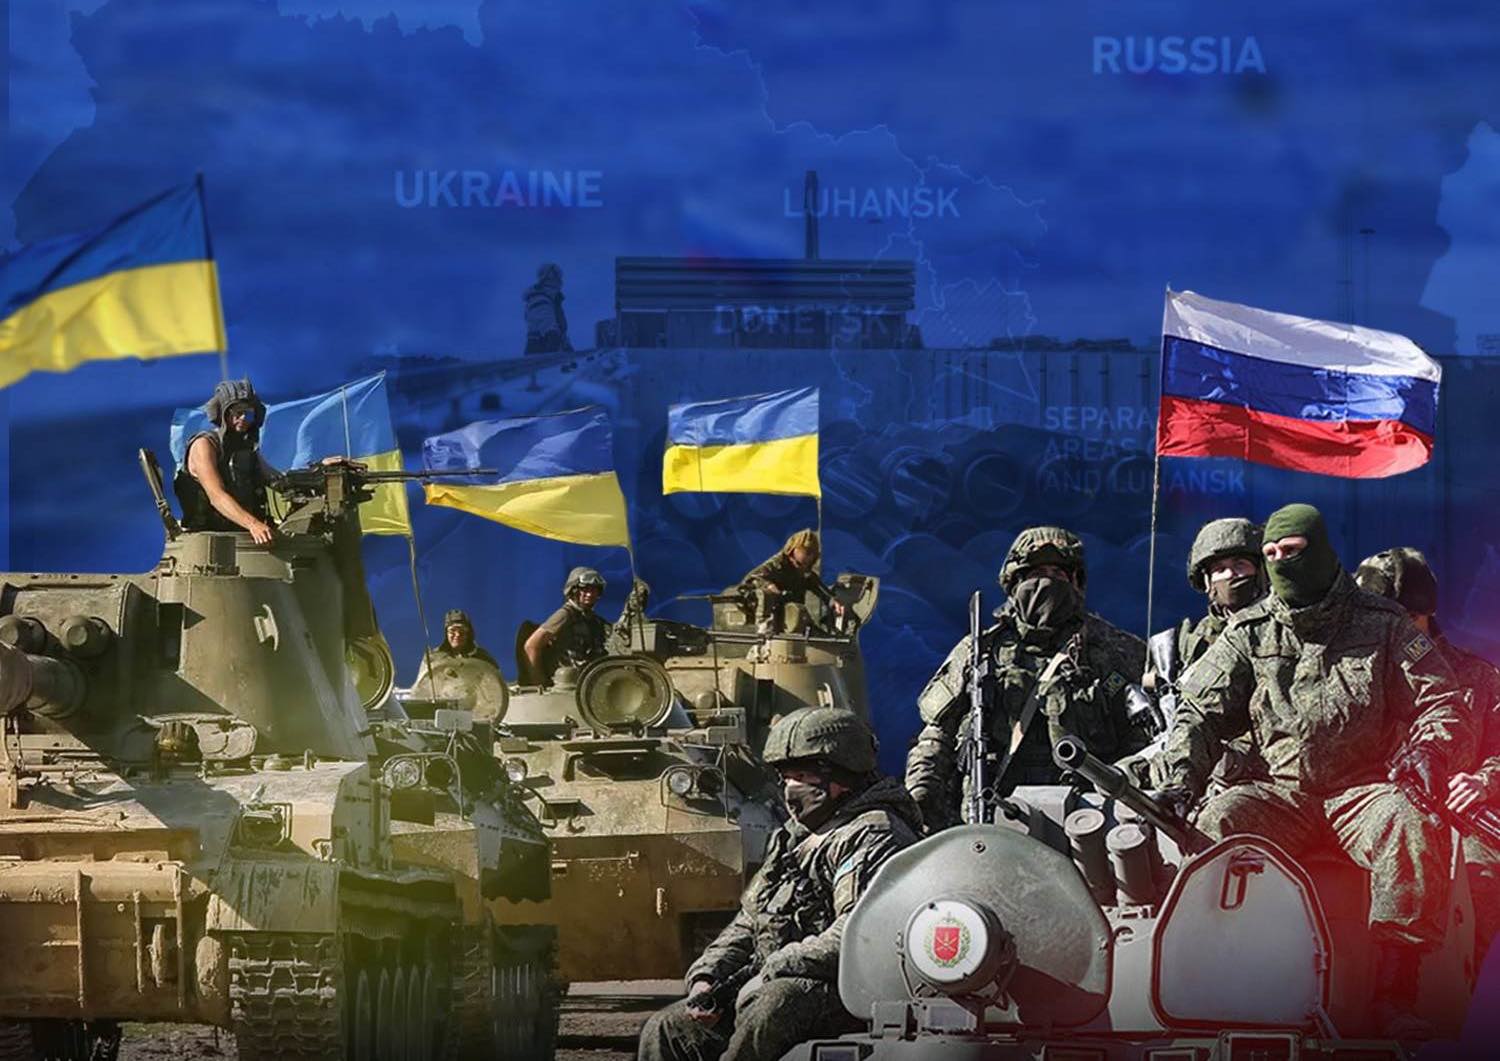 النتائج المحتملة من حرب روسيا وأوكرانيا وخيارات الصين | البيان